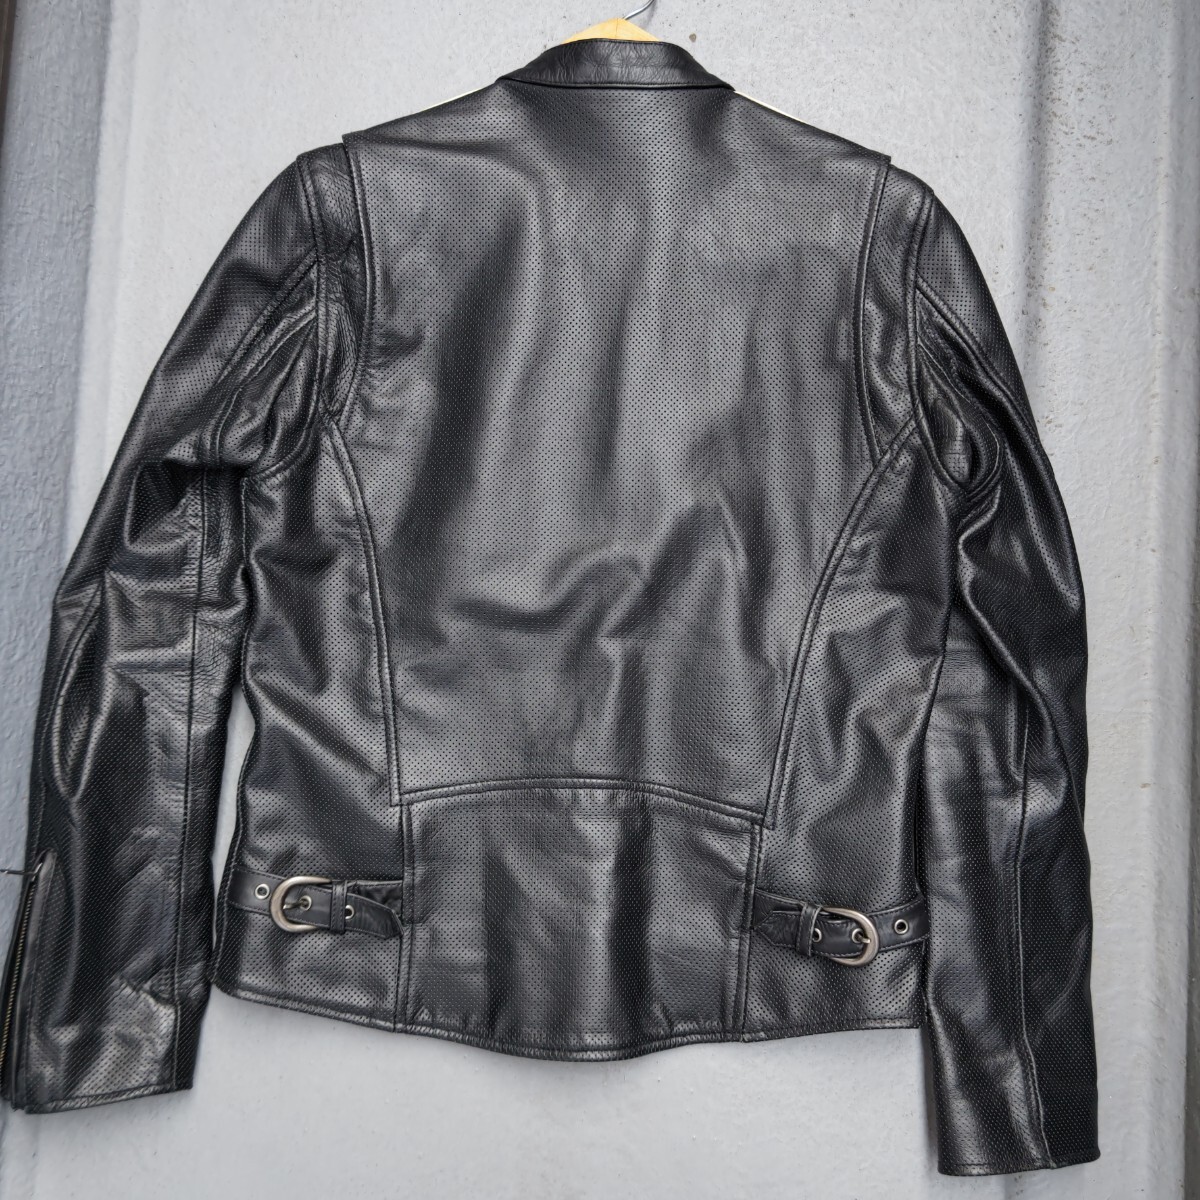 Liugoo Leather パンチングレザー シングルライダース【M】ブラック カウハイド バイカーズ レザージャケット_画像2